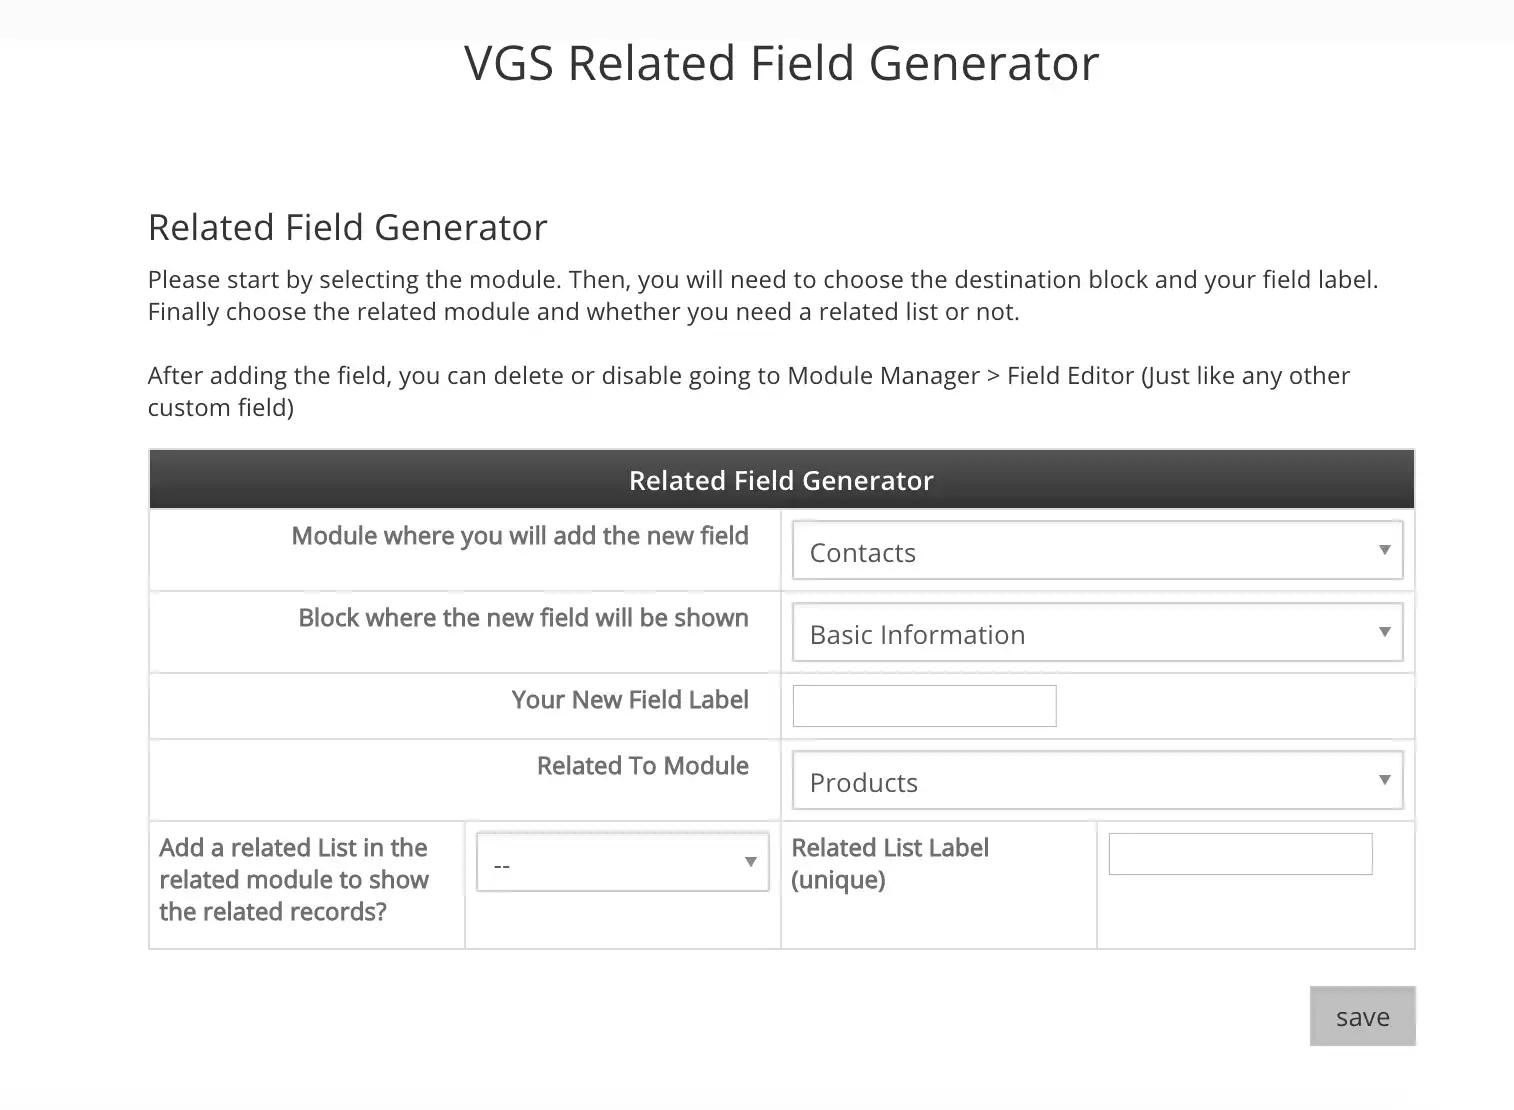 Laden Sie das Web-Tool oder die Web-App VGS Related Field Generator herunter